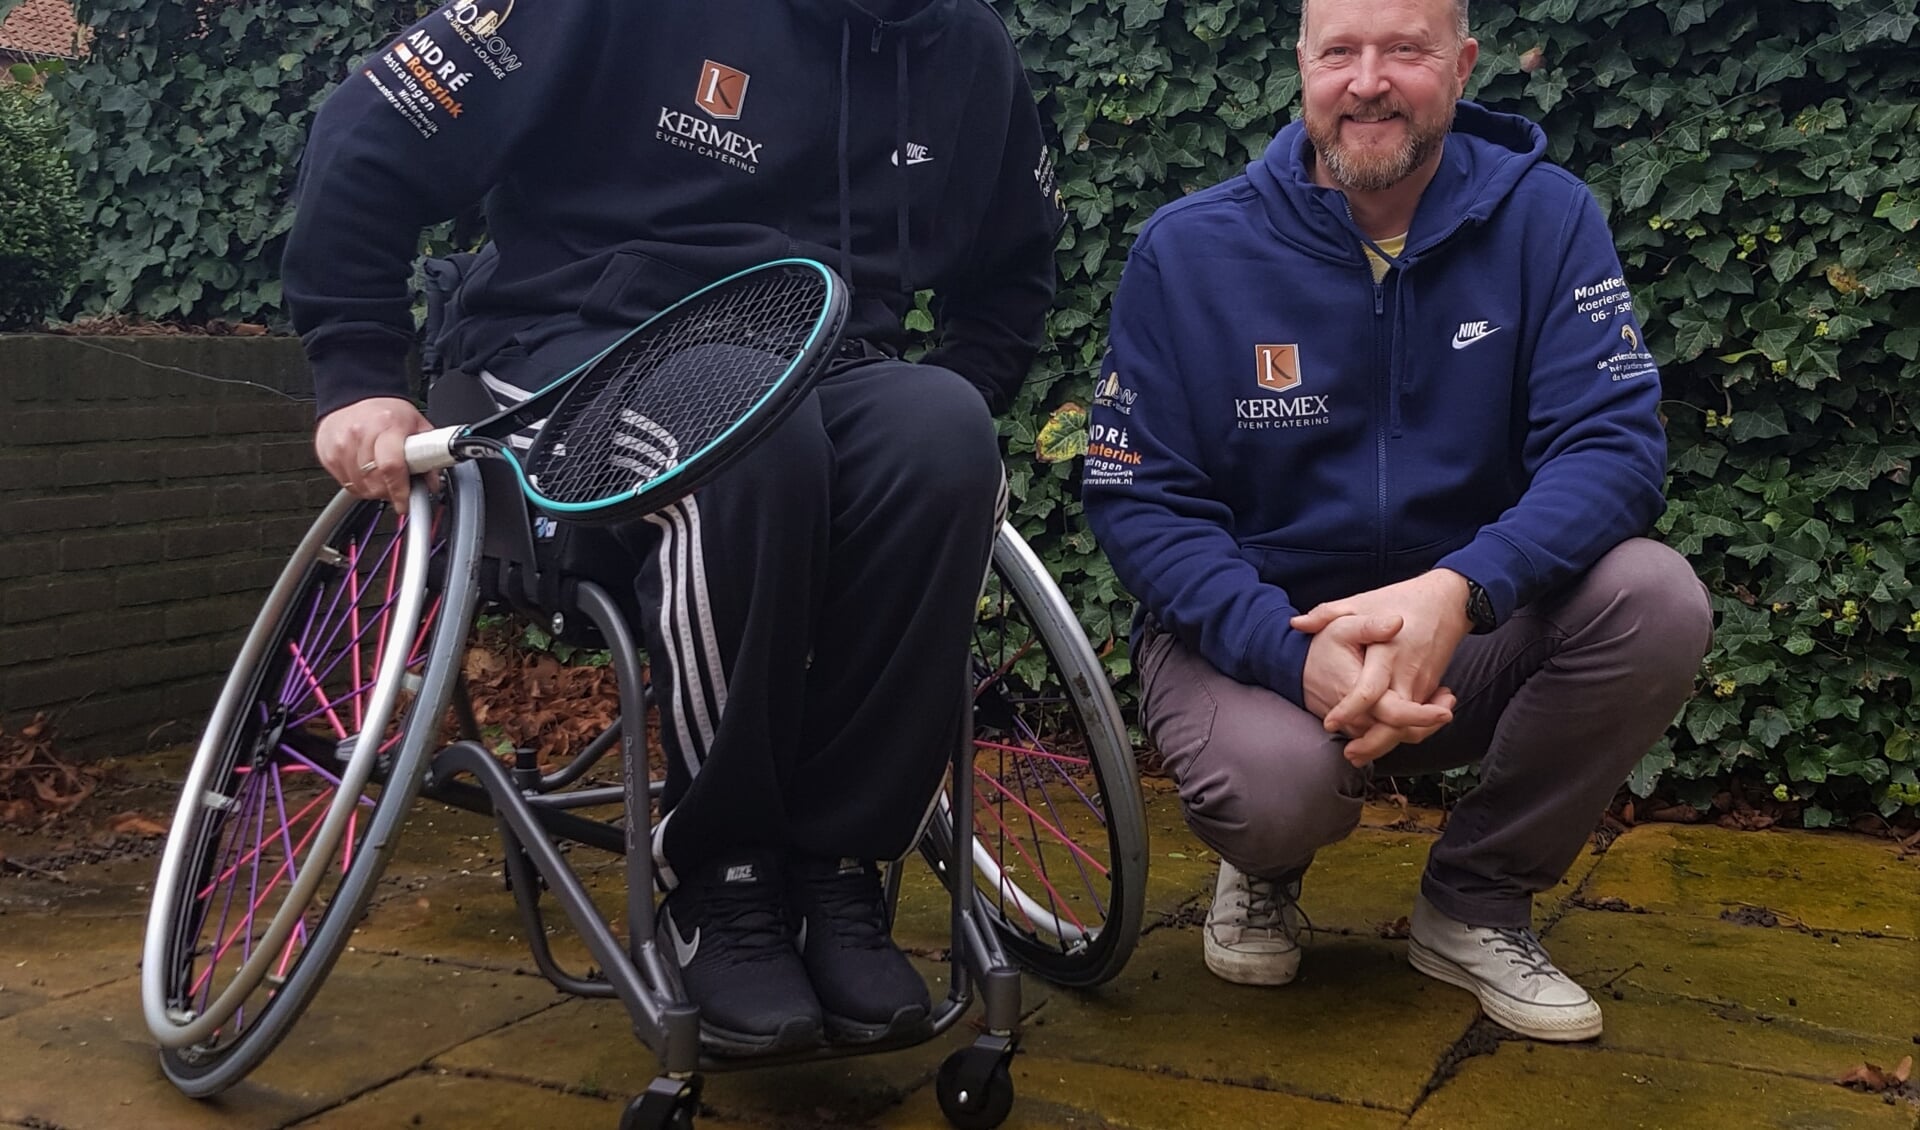 In zijn nieuwe op maat gemaakte rolstoel, hoopt Roy Kusters de paralympische spelen in Parijs in 2024 te behalen. Patrick Leferink van Kermex Event Catering draagt door middel van shirtsponsoring bij aan de verwezenlijking van deze droom. Foto: Alice Rouwhorst